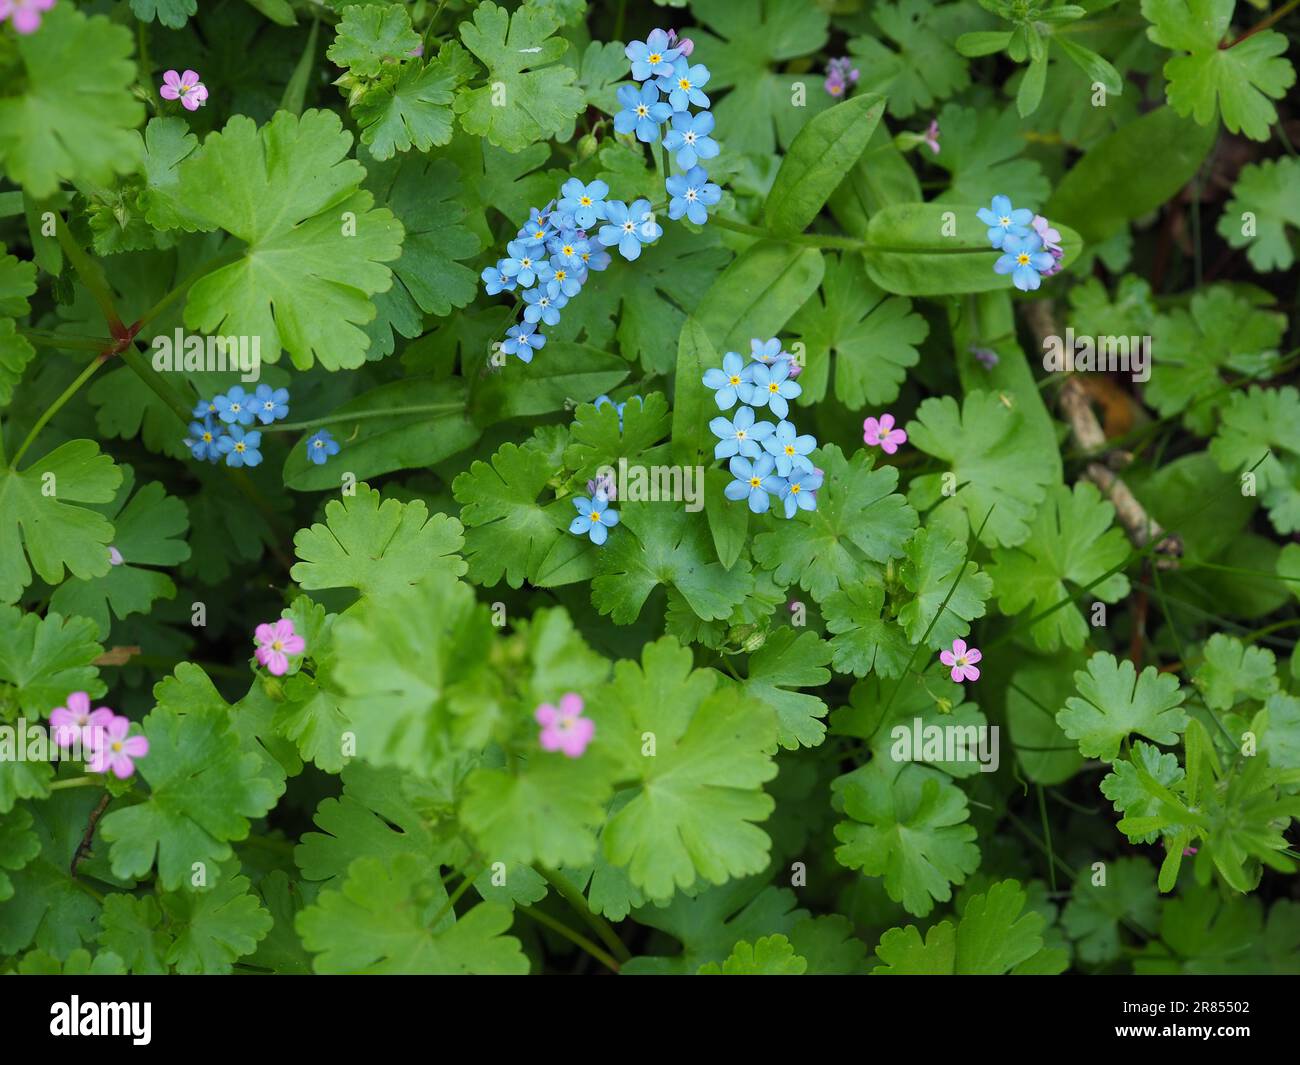 Un tapis de minuscules fleurs sauvages britanniques, y compris des oublis bleus et des feuillages de printemps frais et verts sous une hérisson ou dans un jardin animalier Banque D'Images